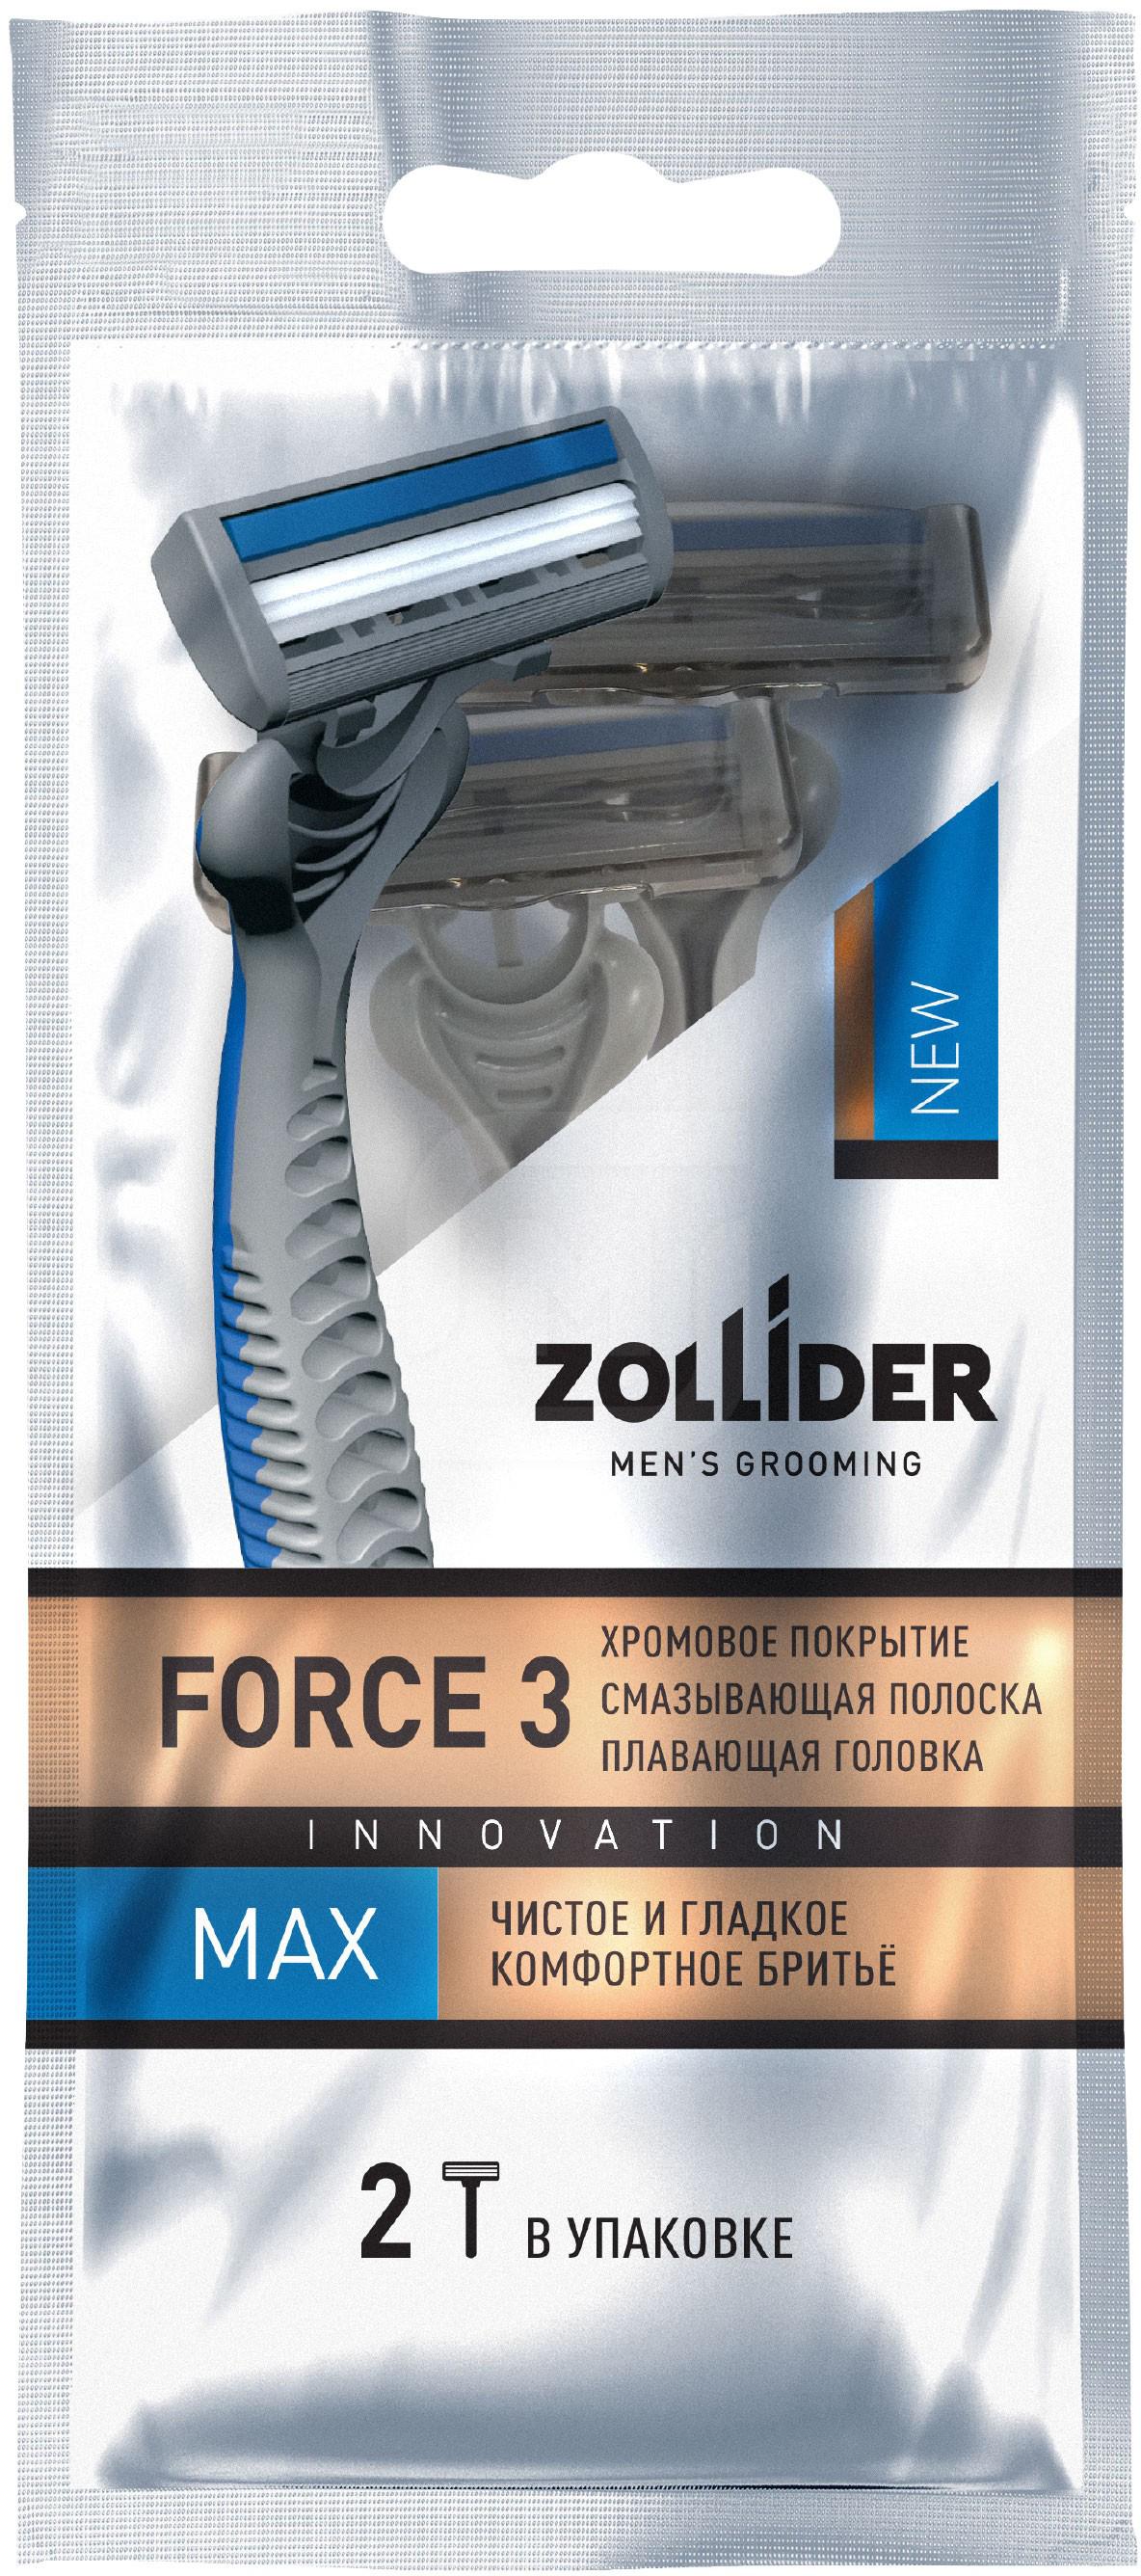 Бритвенные станки мужские Zollider Force 3 Max одноразовые с тройными лезвиями 2 шт бритвенные станки мужские zollider force 2 basic одноразовые с двойными лезвиями 4 1 шт